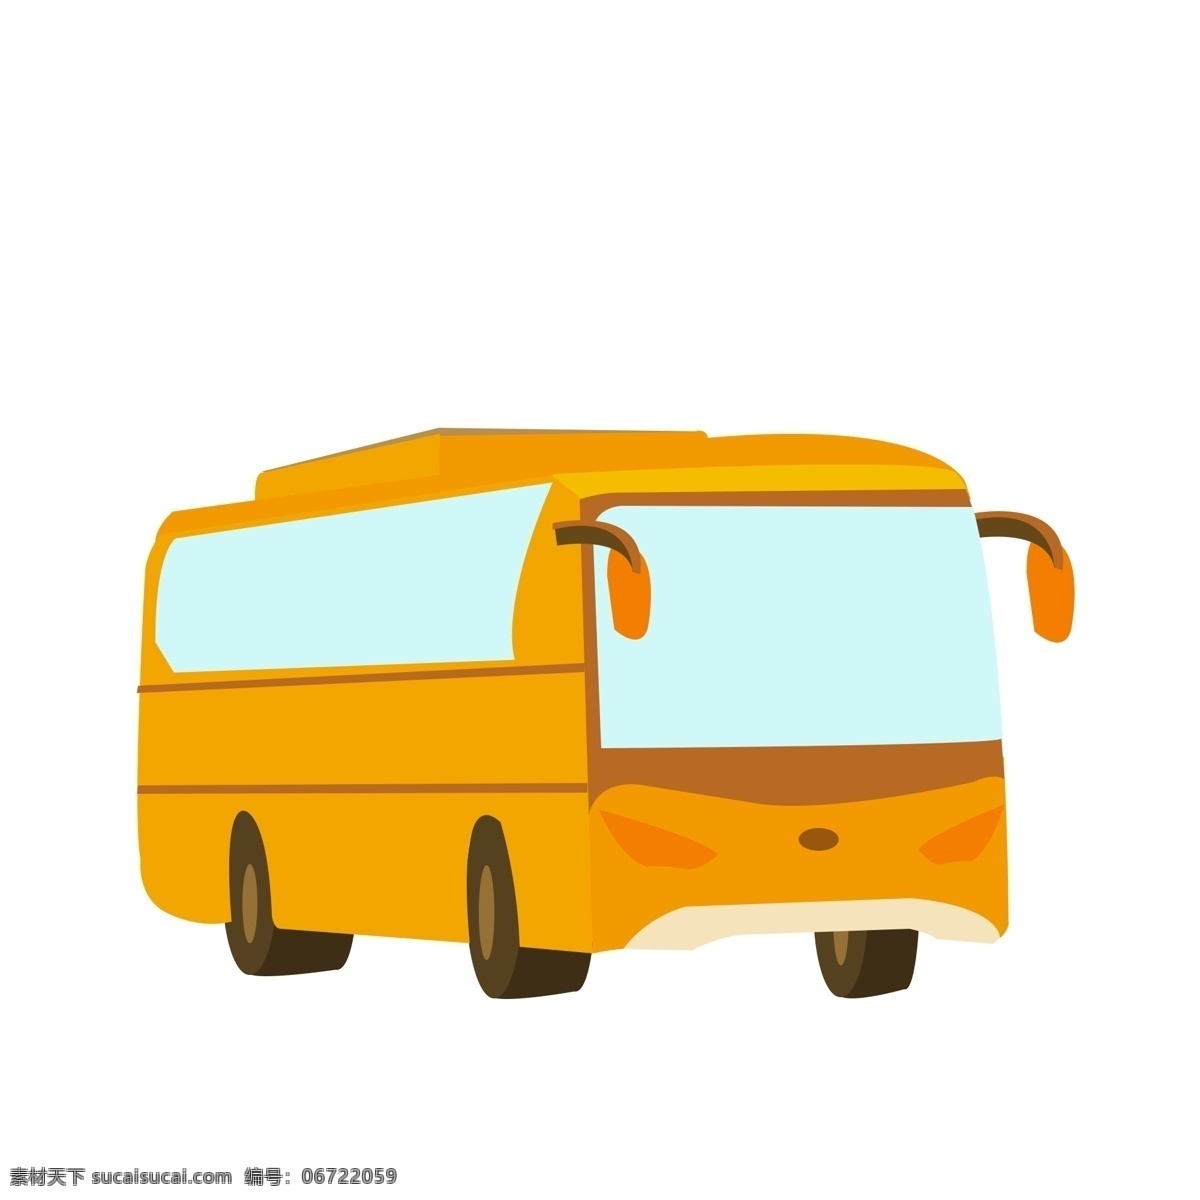 黄色 矢量 卡通 巴士 扁平化汽车 公共小巴 公共汽车 黄色汽车 免扣 公交 小巴 可爱 蓝色玻璃